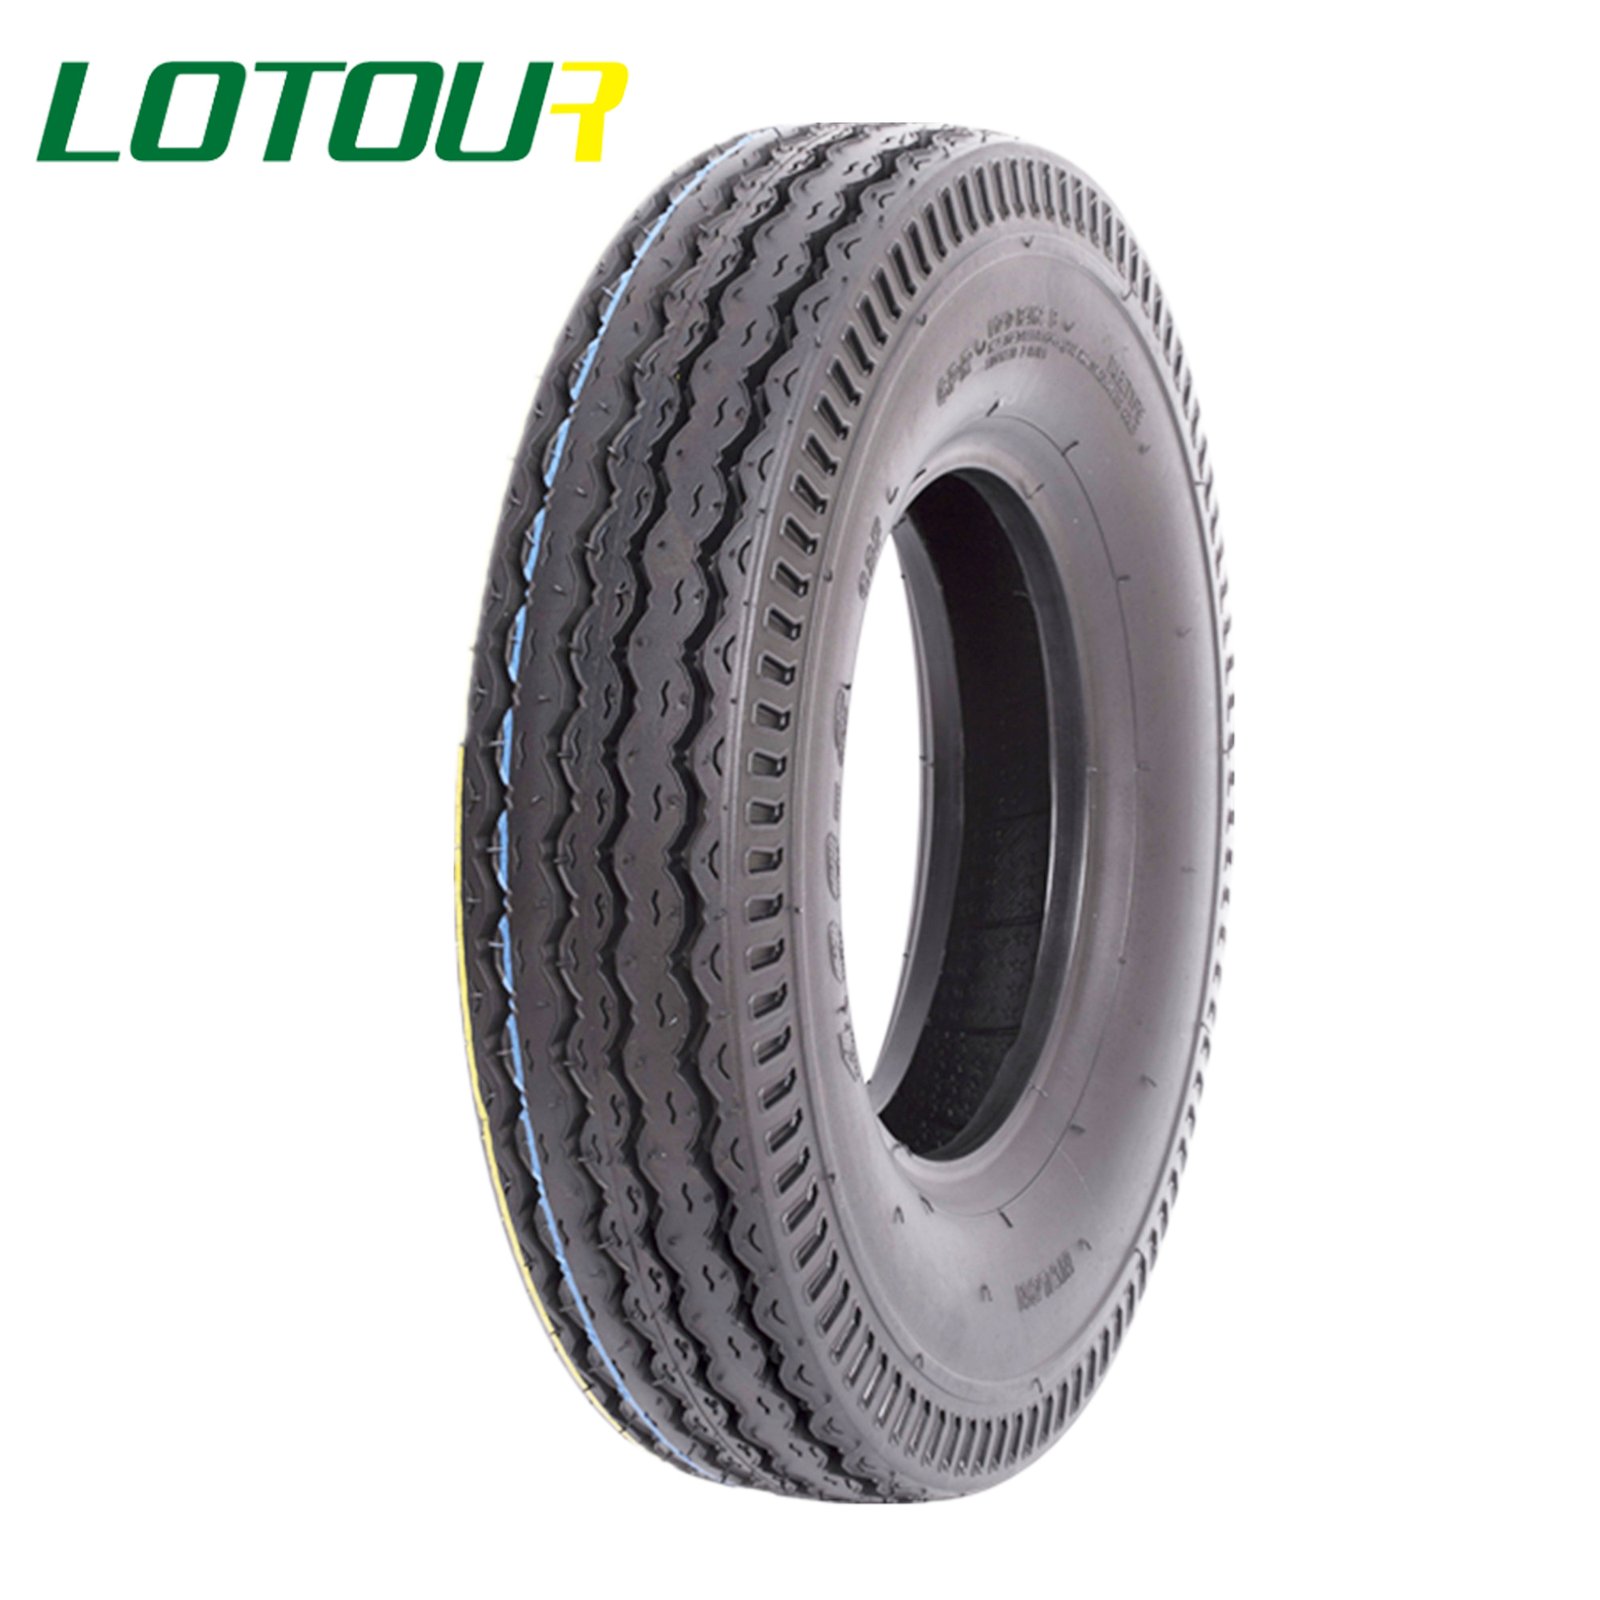 Lotour Tire M1077